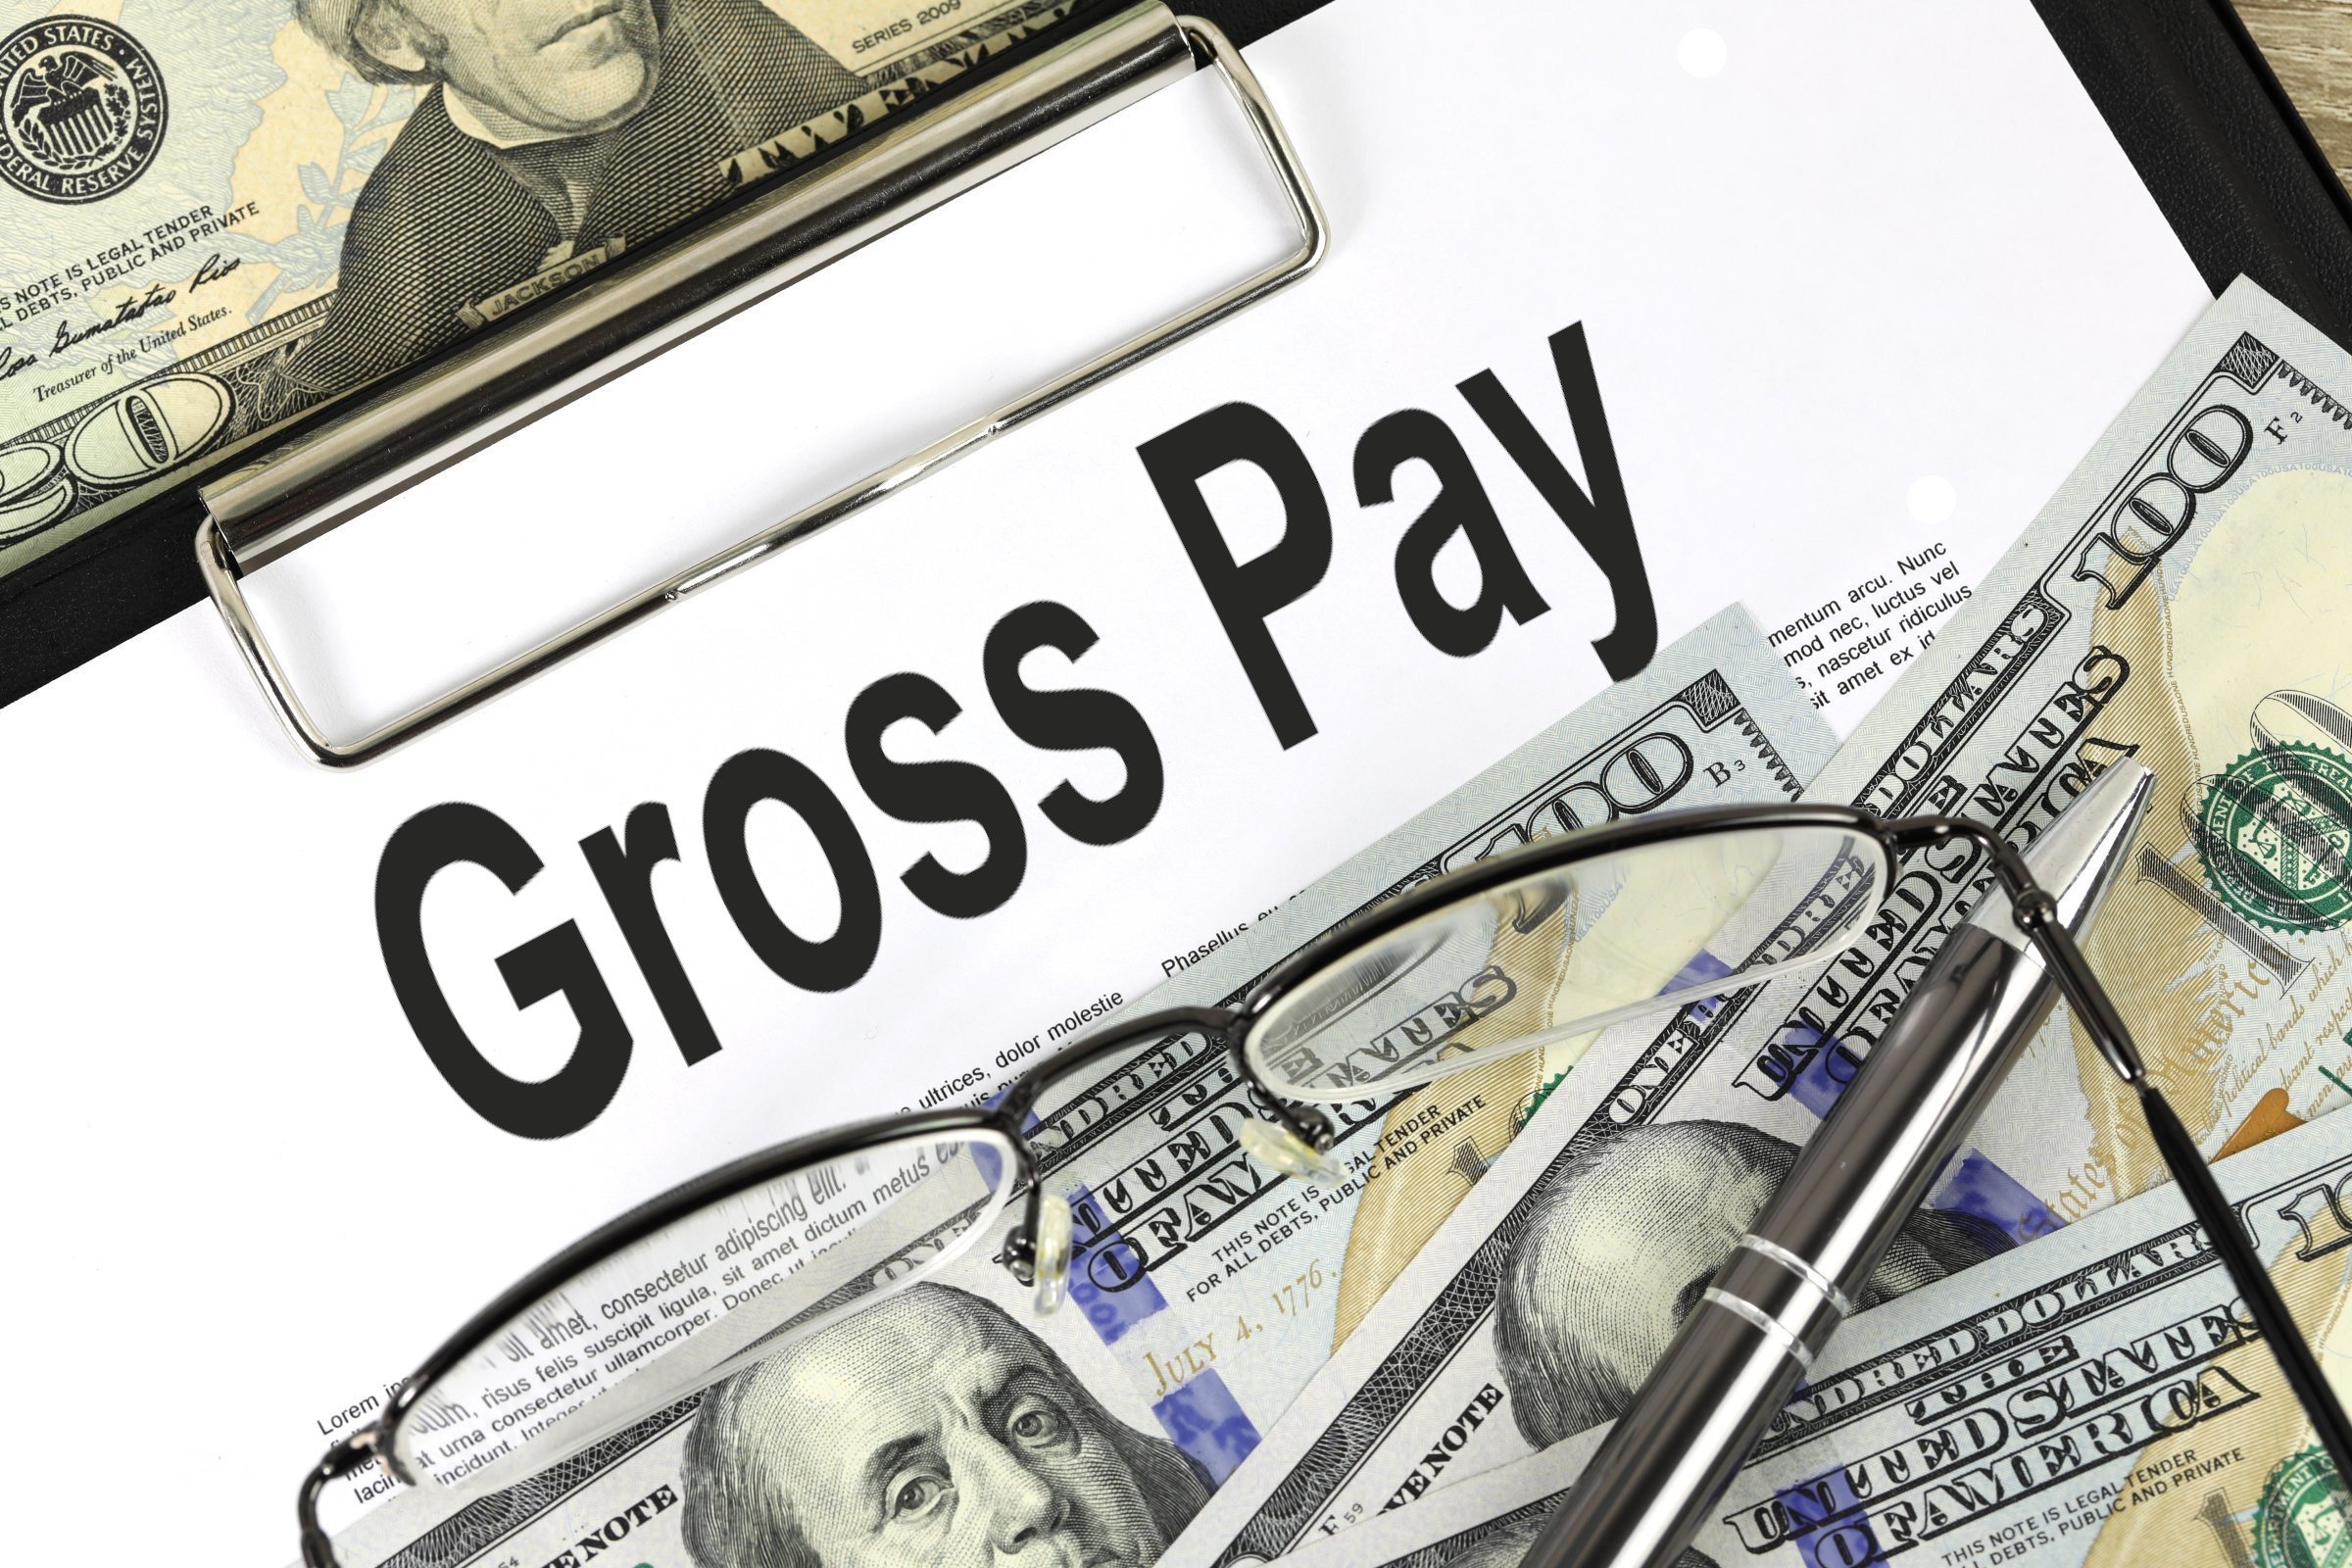 gross pay